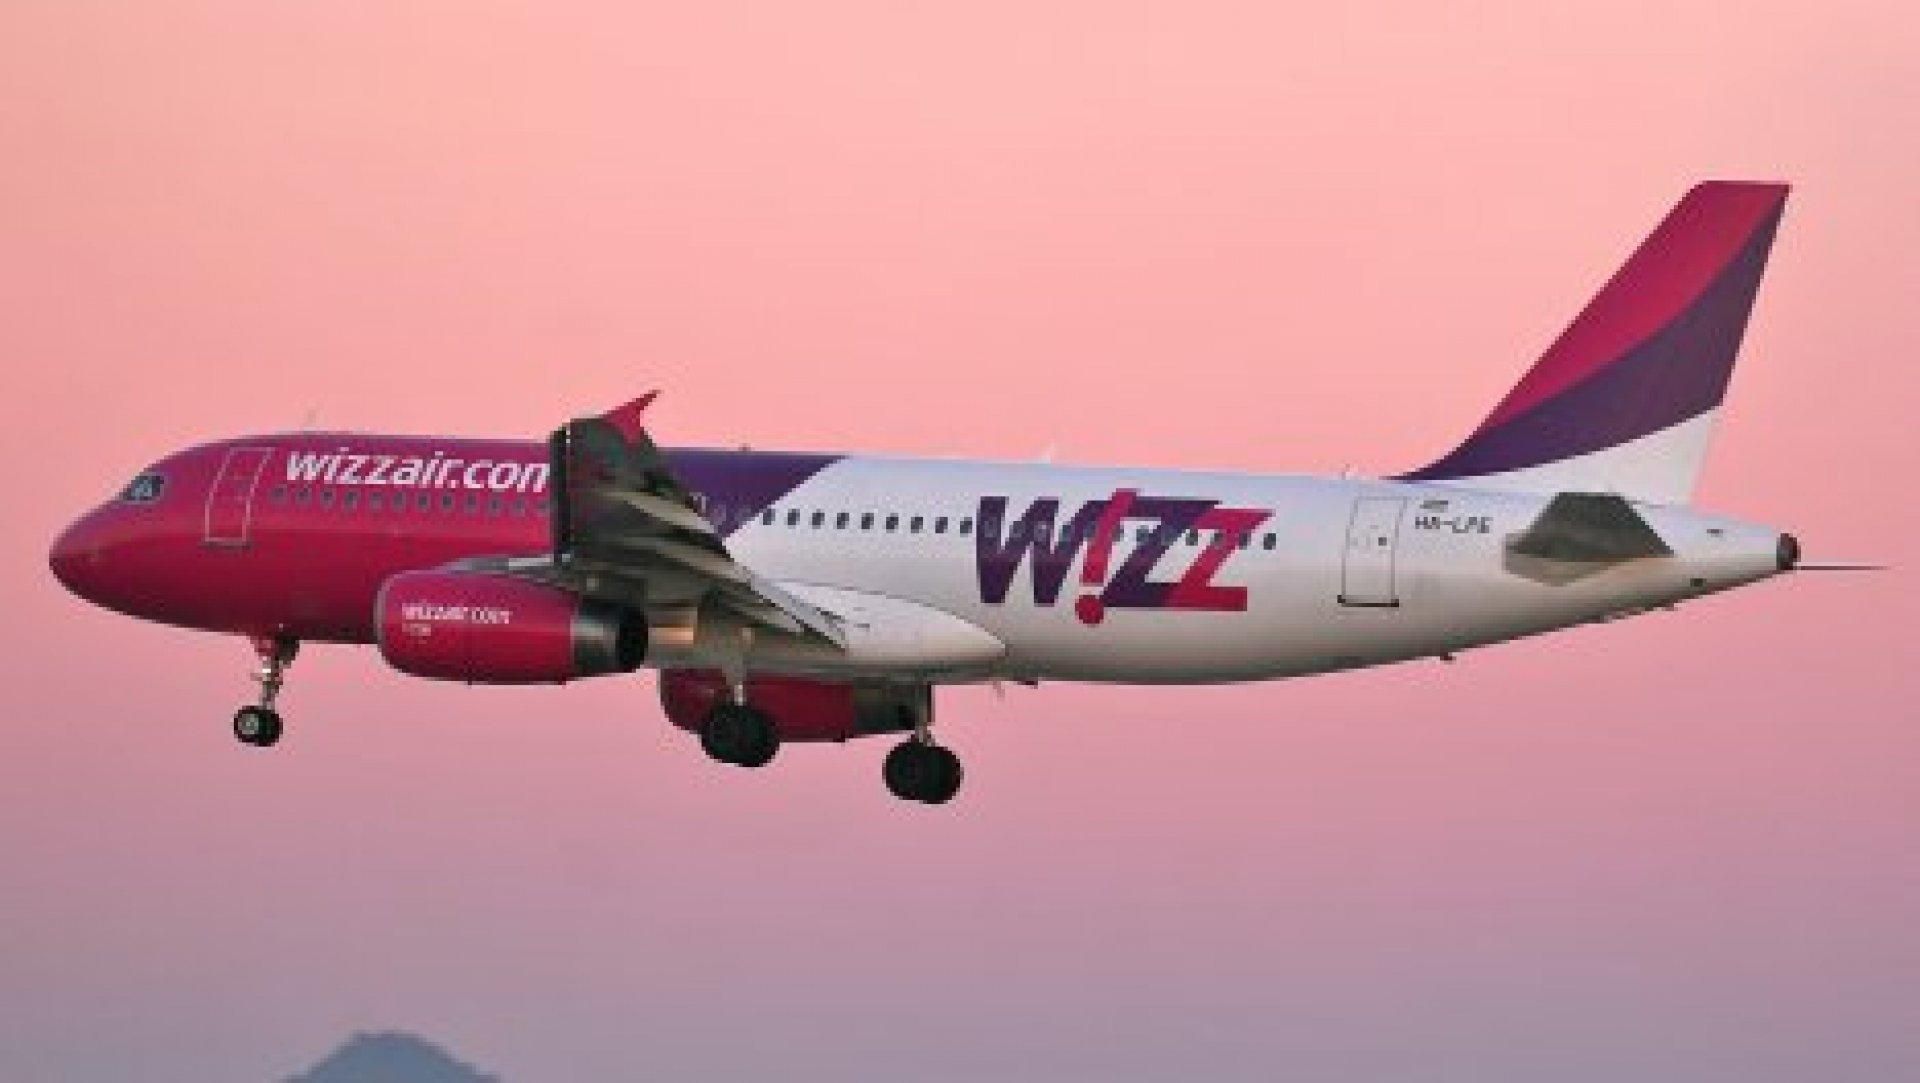 Тільки 2 дні: Wizz Air влаштував осінній розпродаж – квитки від 9 євро - 22 сентября 2021 - Travel